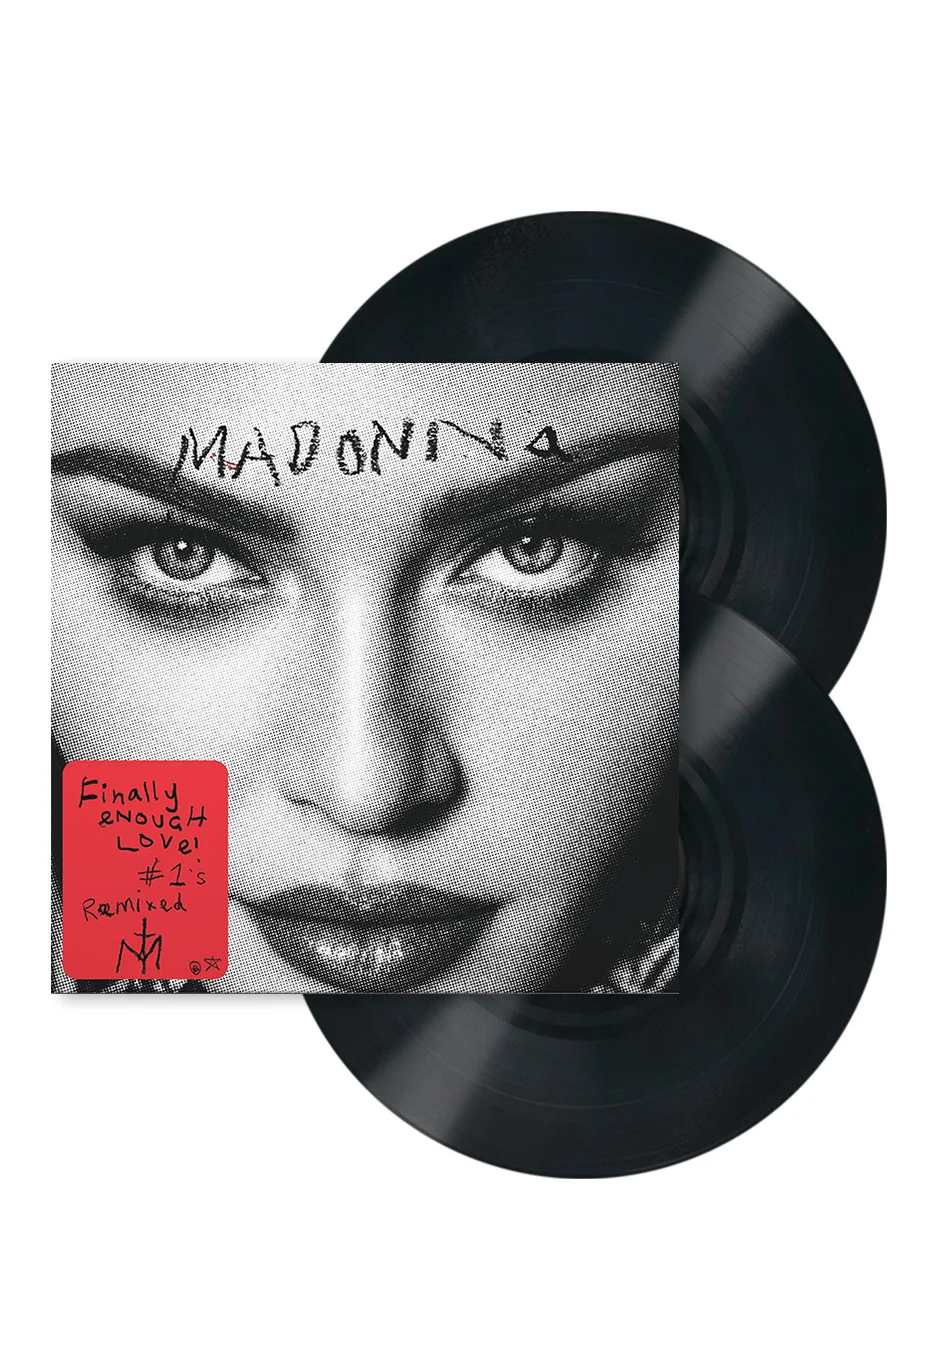 Madonna "Finally Enough Love" Black 2LP